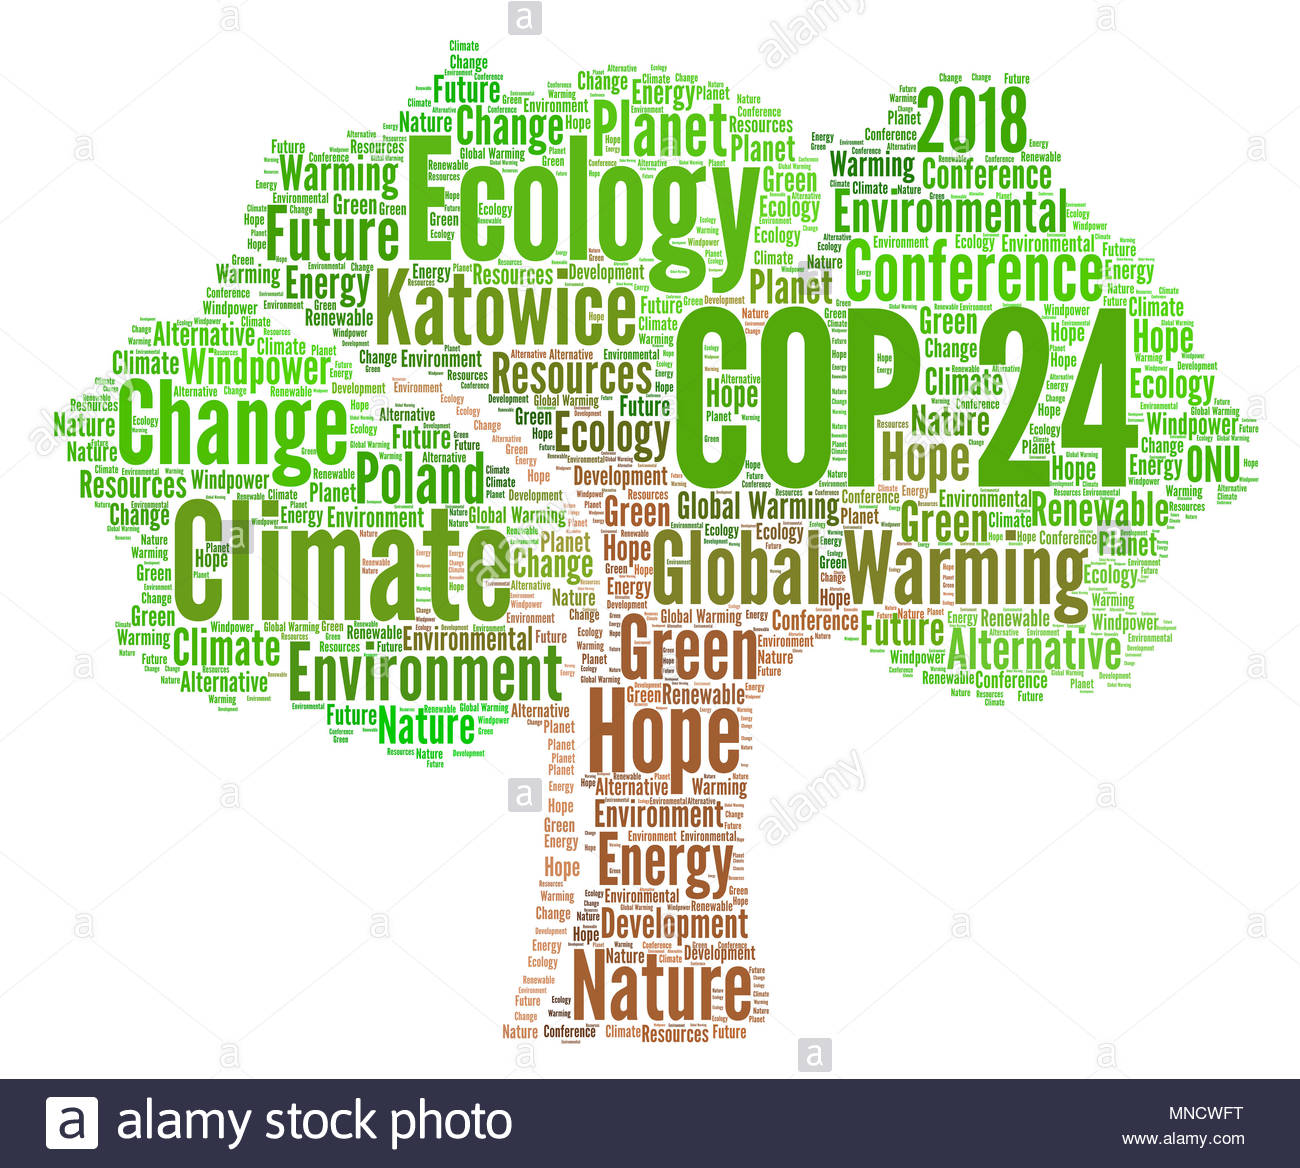 Trước thềm Hội nghị cấp cao của Liên Hợp Quốc về chống biến đổi khí hậu lần thứ 24